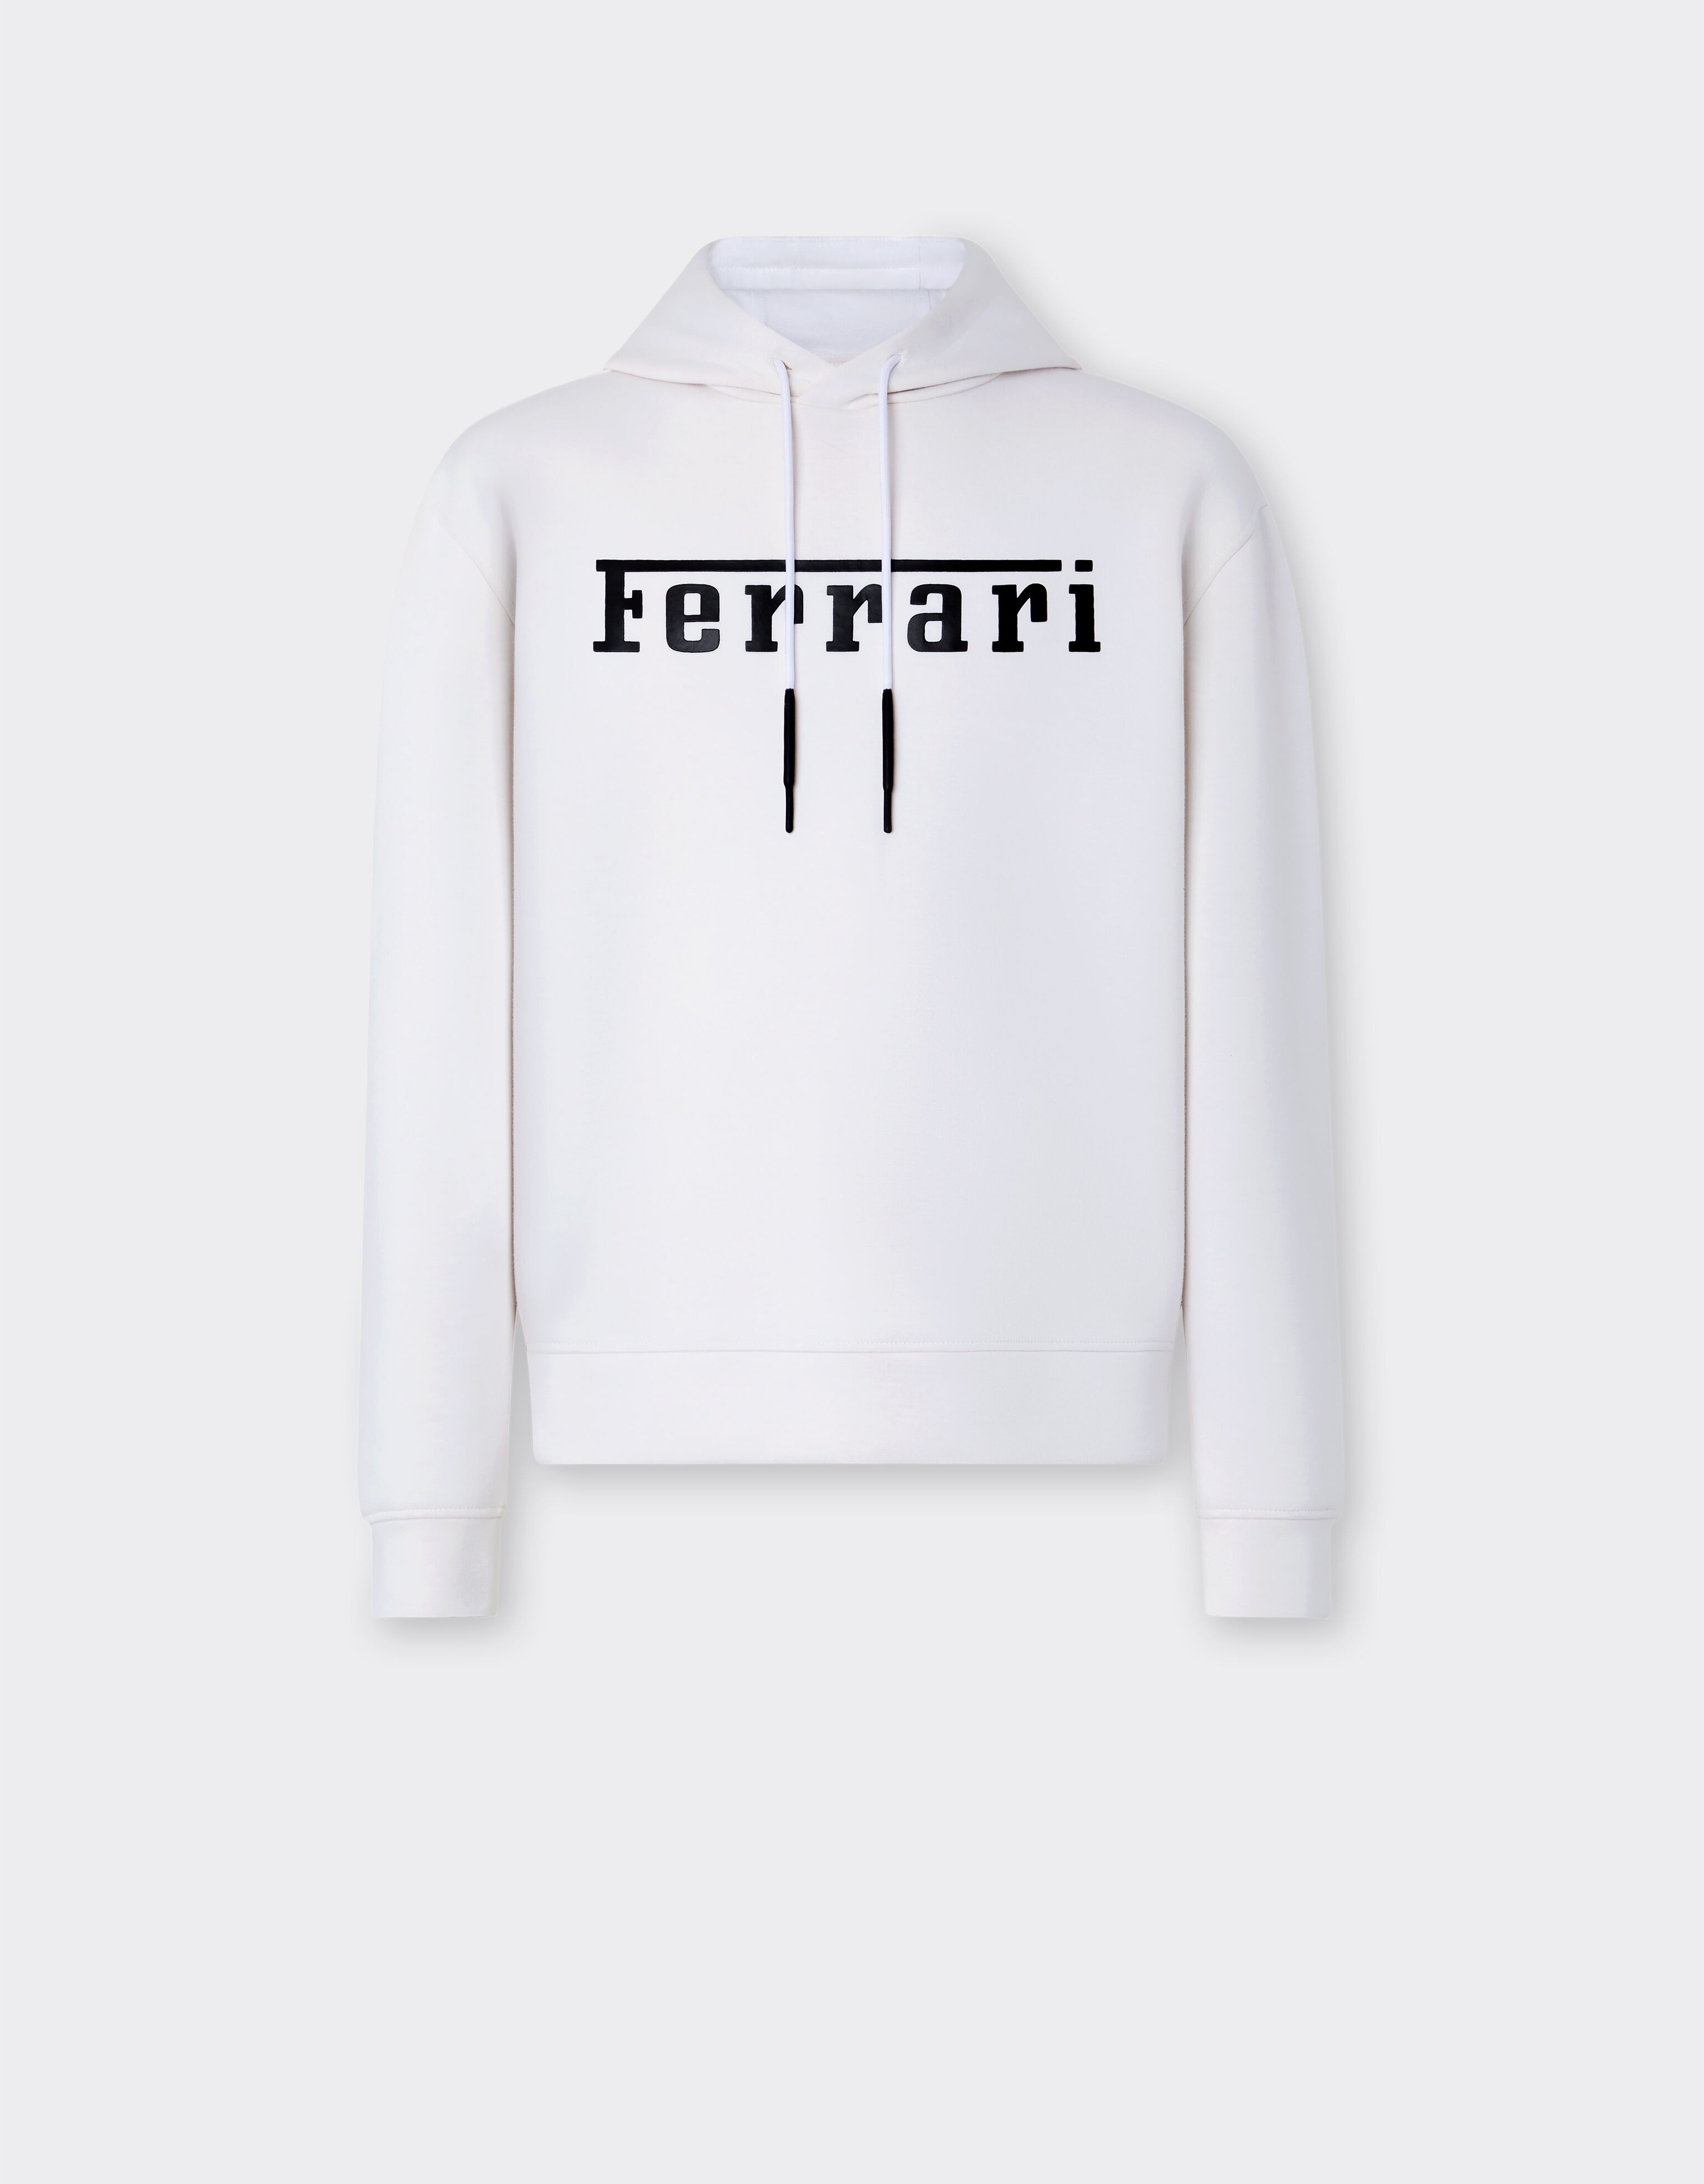 Ferrari Scuba sweatshirt with Ferrari logo Optical White 47819f